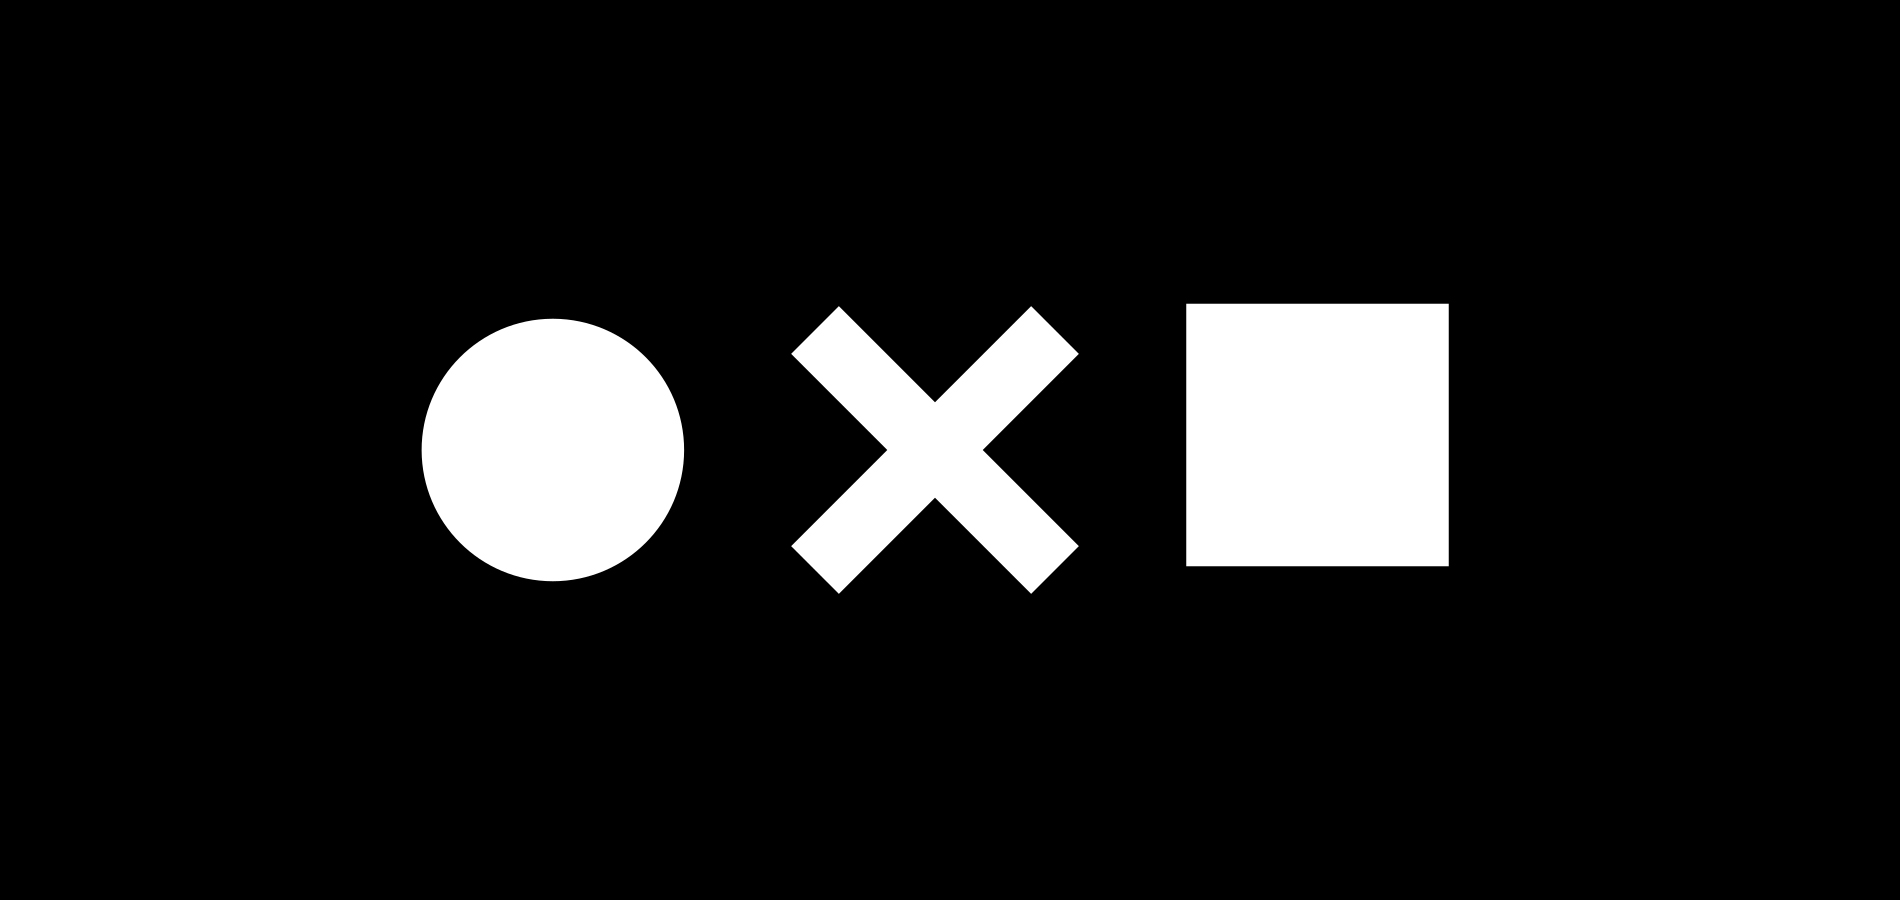 The Noun Project՝ անվճար պատկերակների բանկ